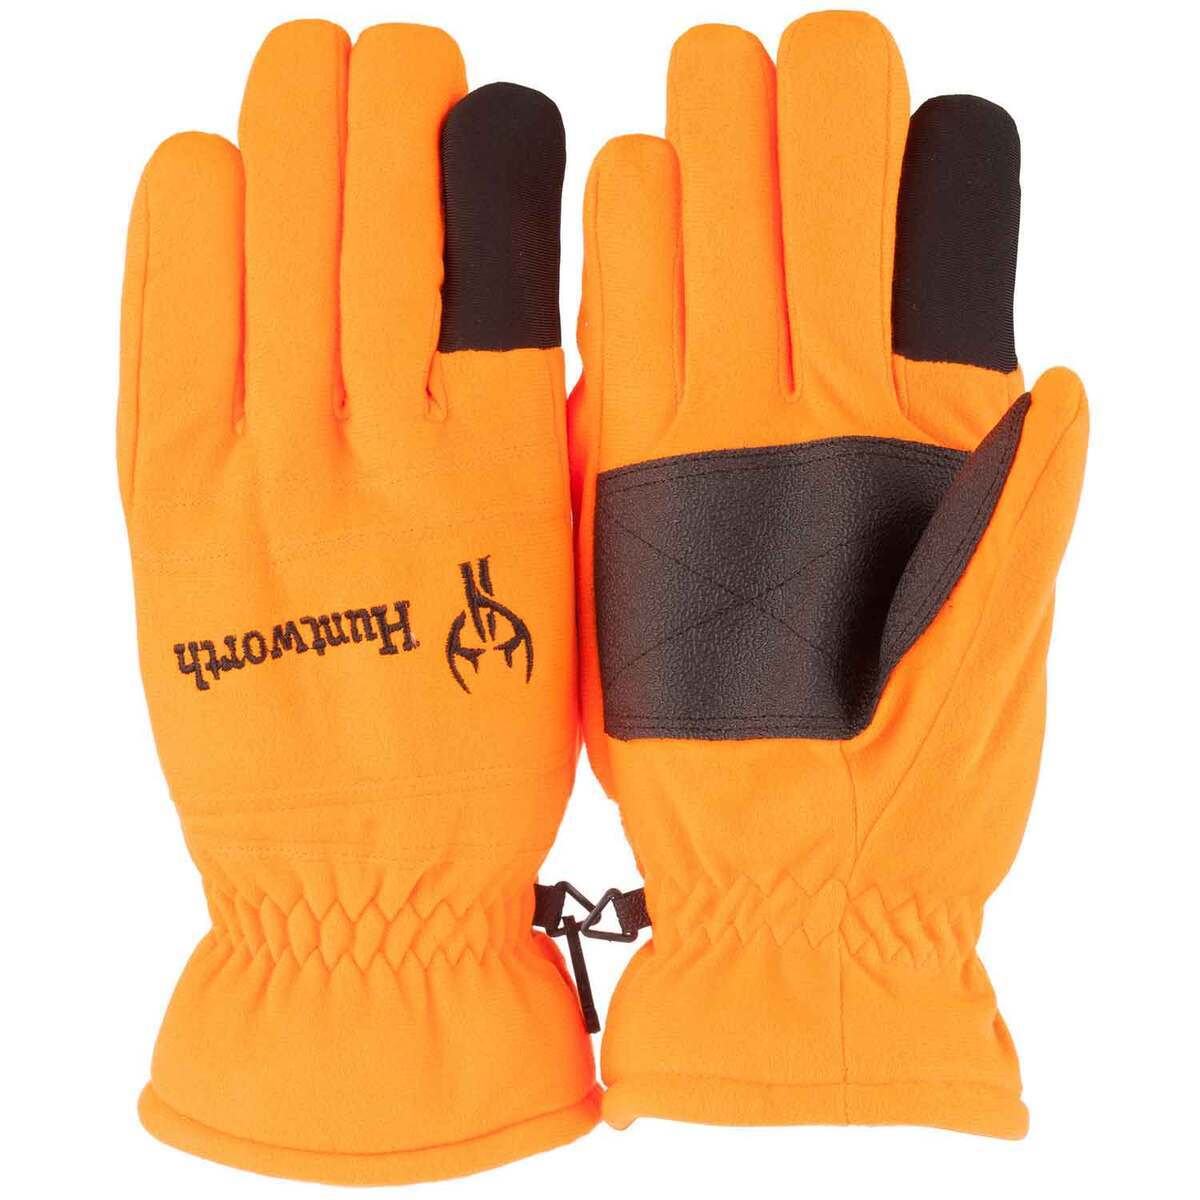 Glacier Glove Men's Pro Angler Fishing Gloves